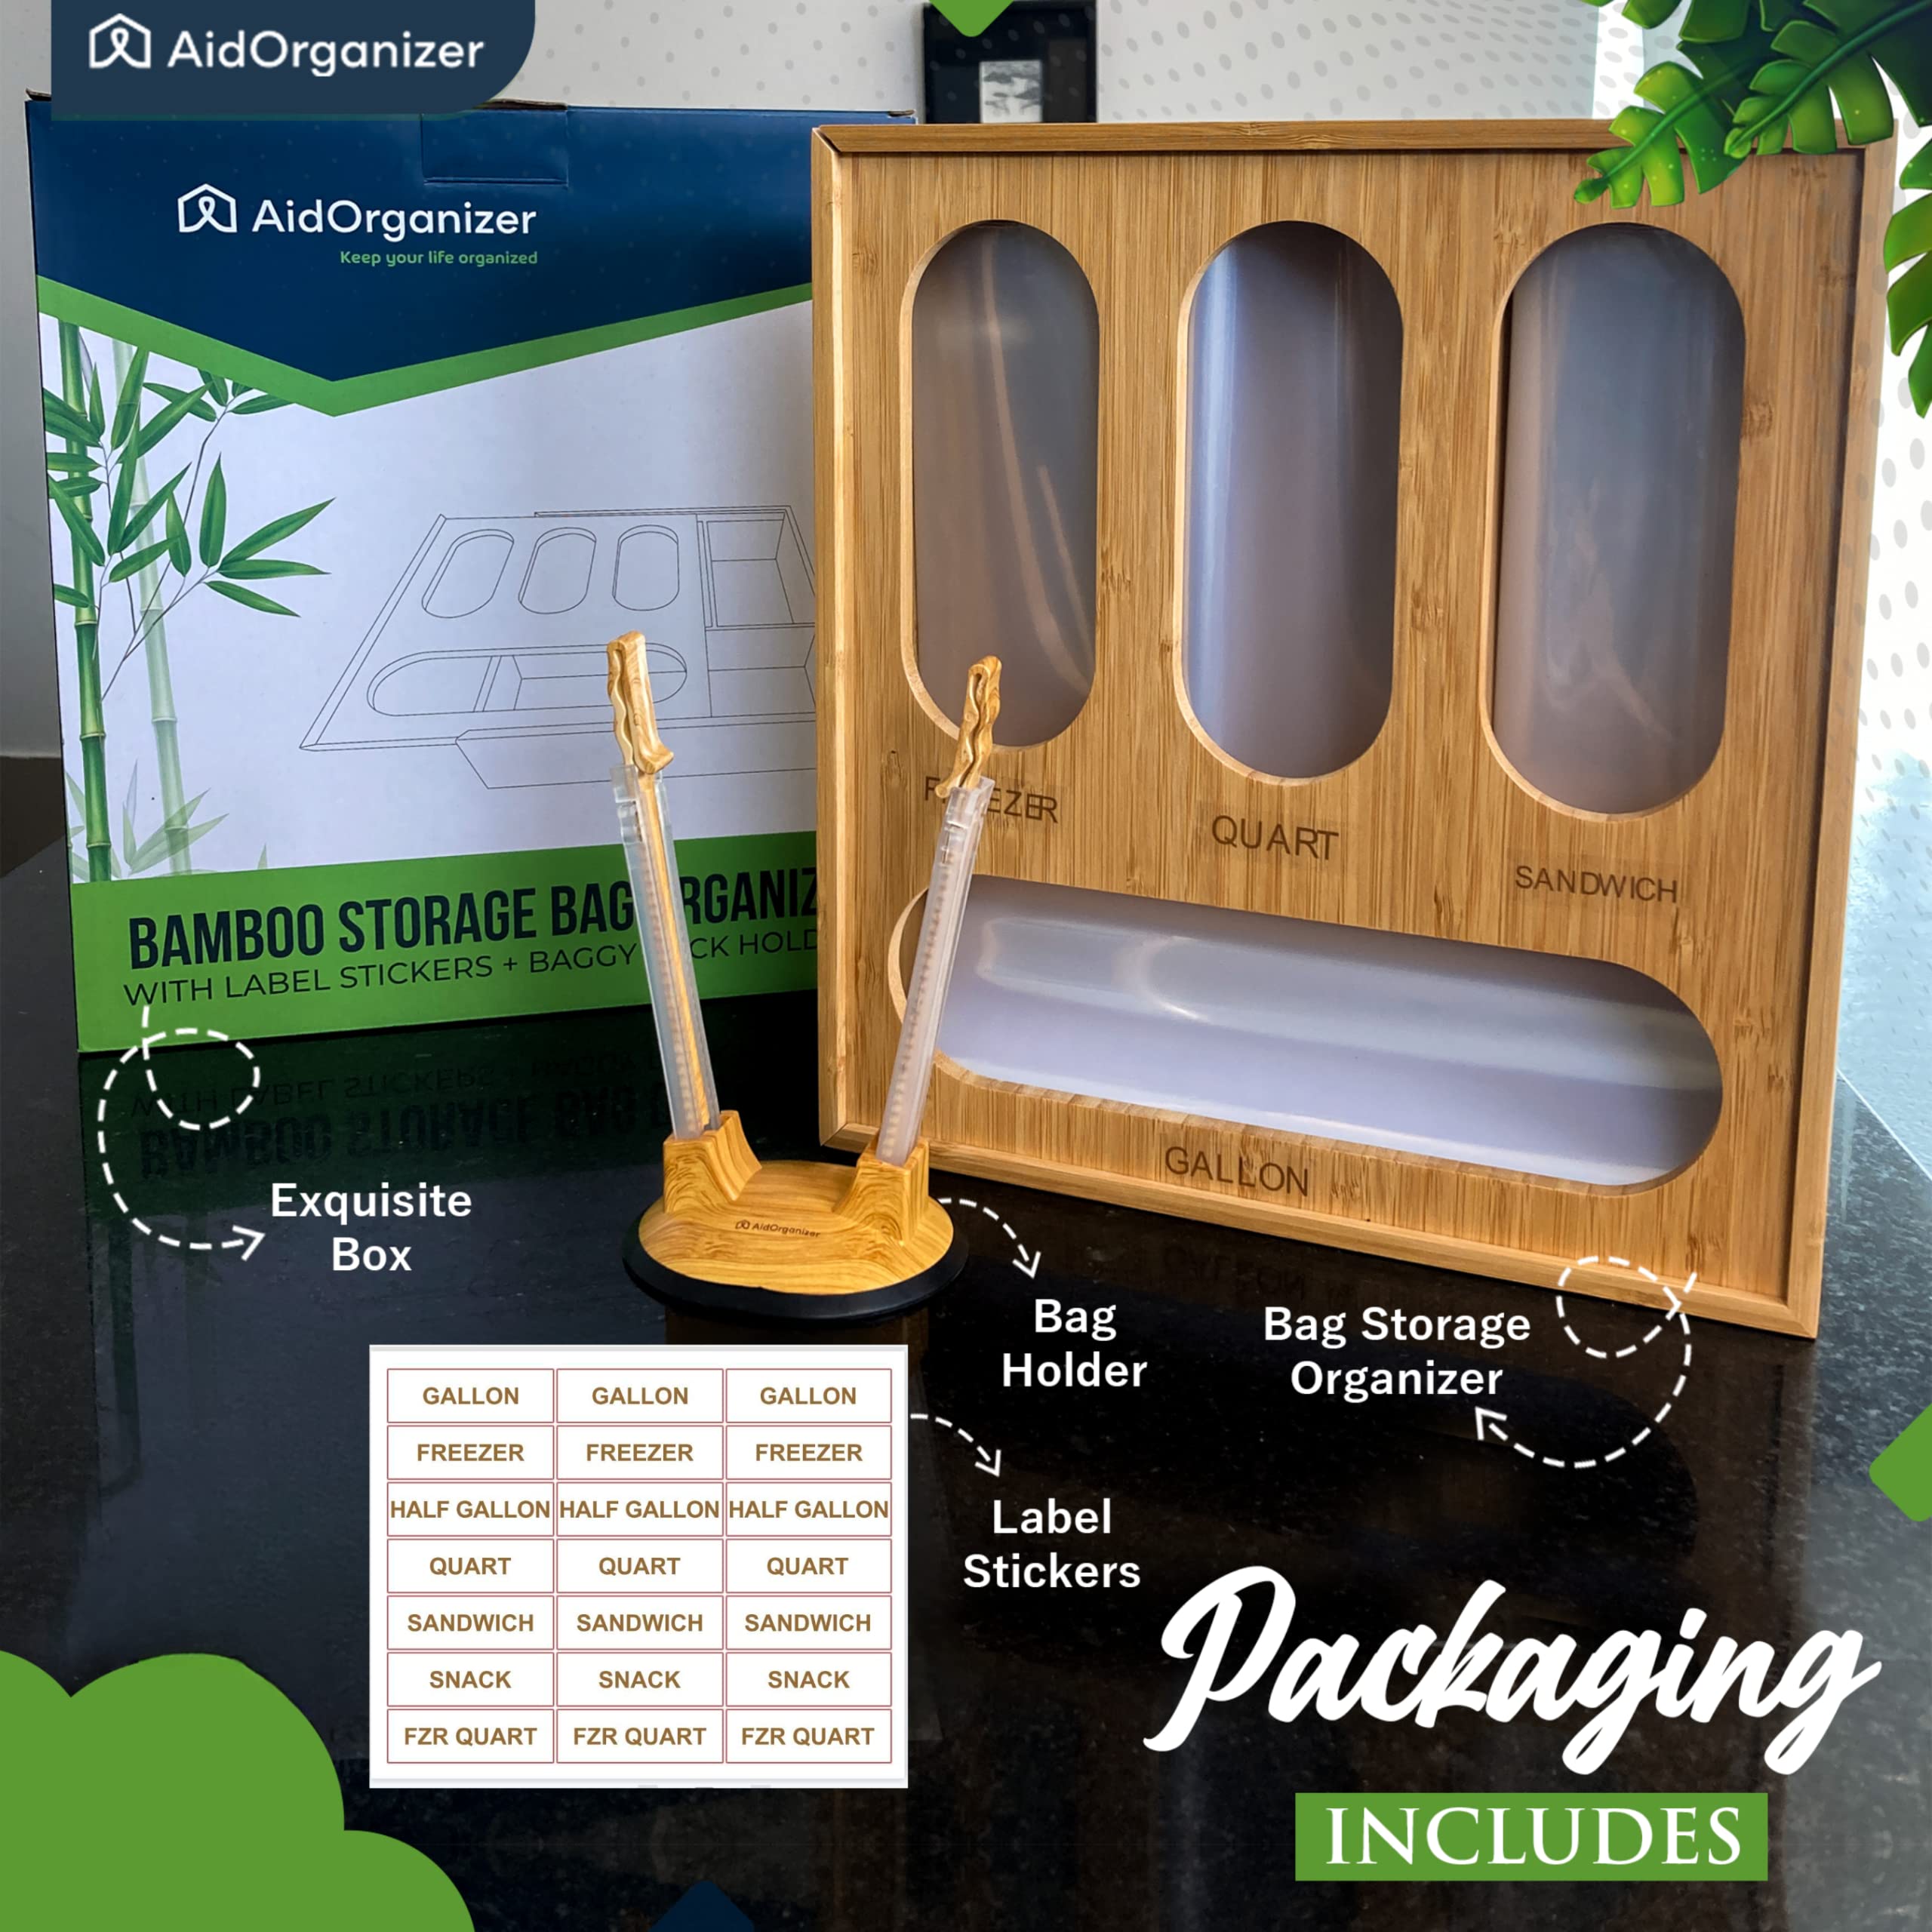 AidOrganizer Ziplock Bag Organizer for Kitchen Drawer - Premium Plastic Bag Holder and Organizer for Sandwich Baggies - Space-Saving Storage Solution with Ziplock Bag Holder